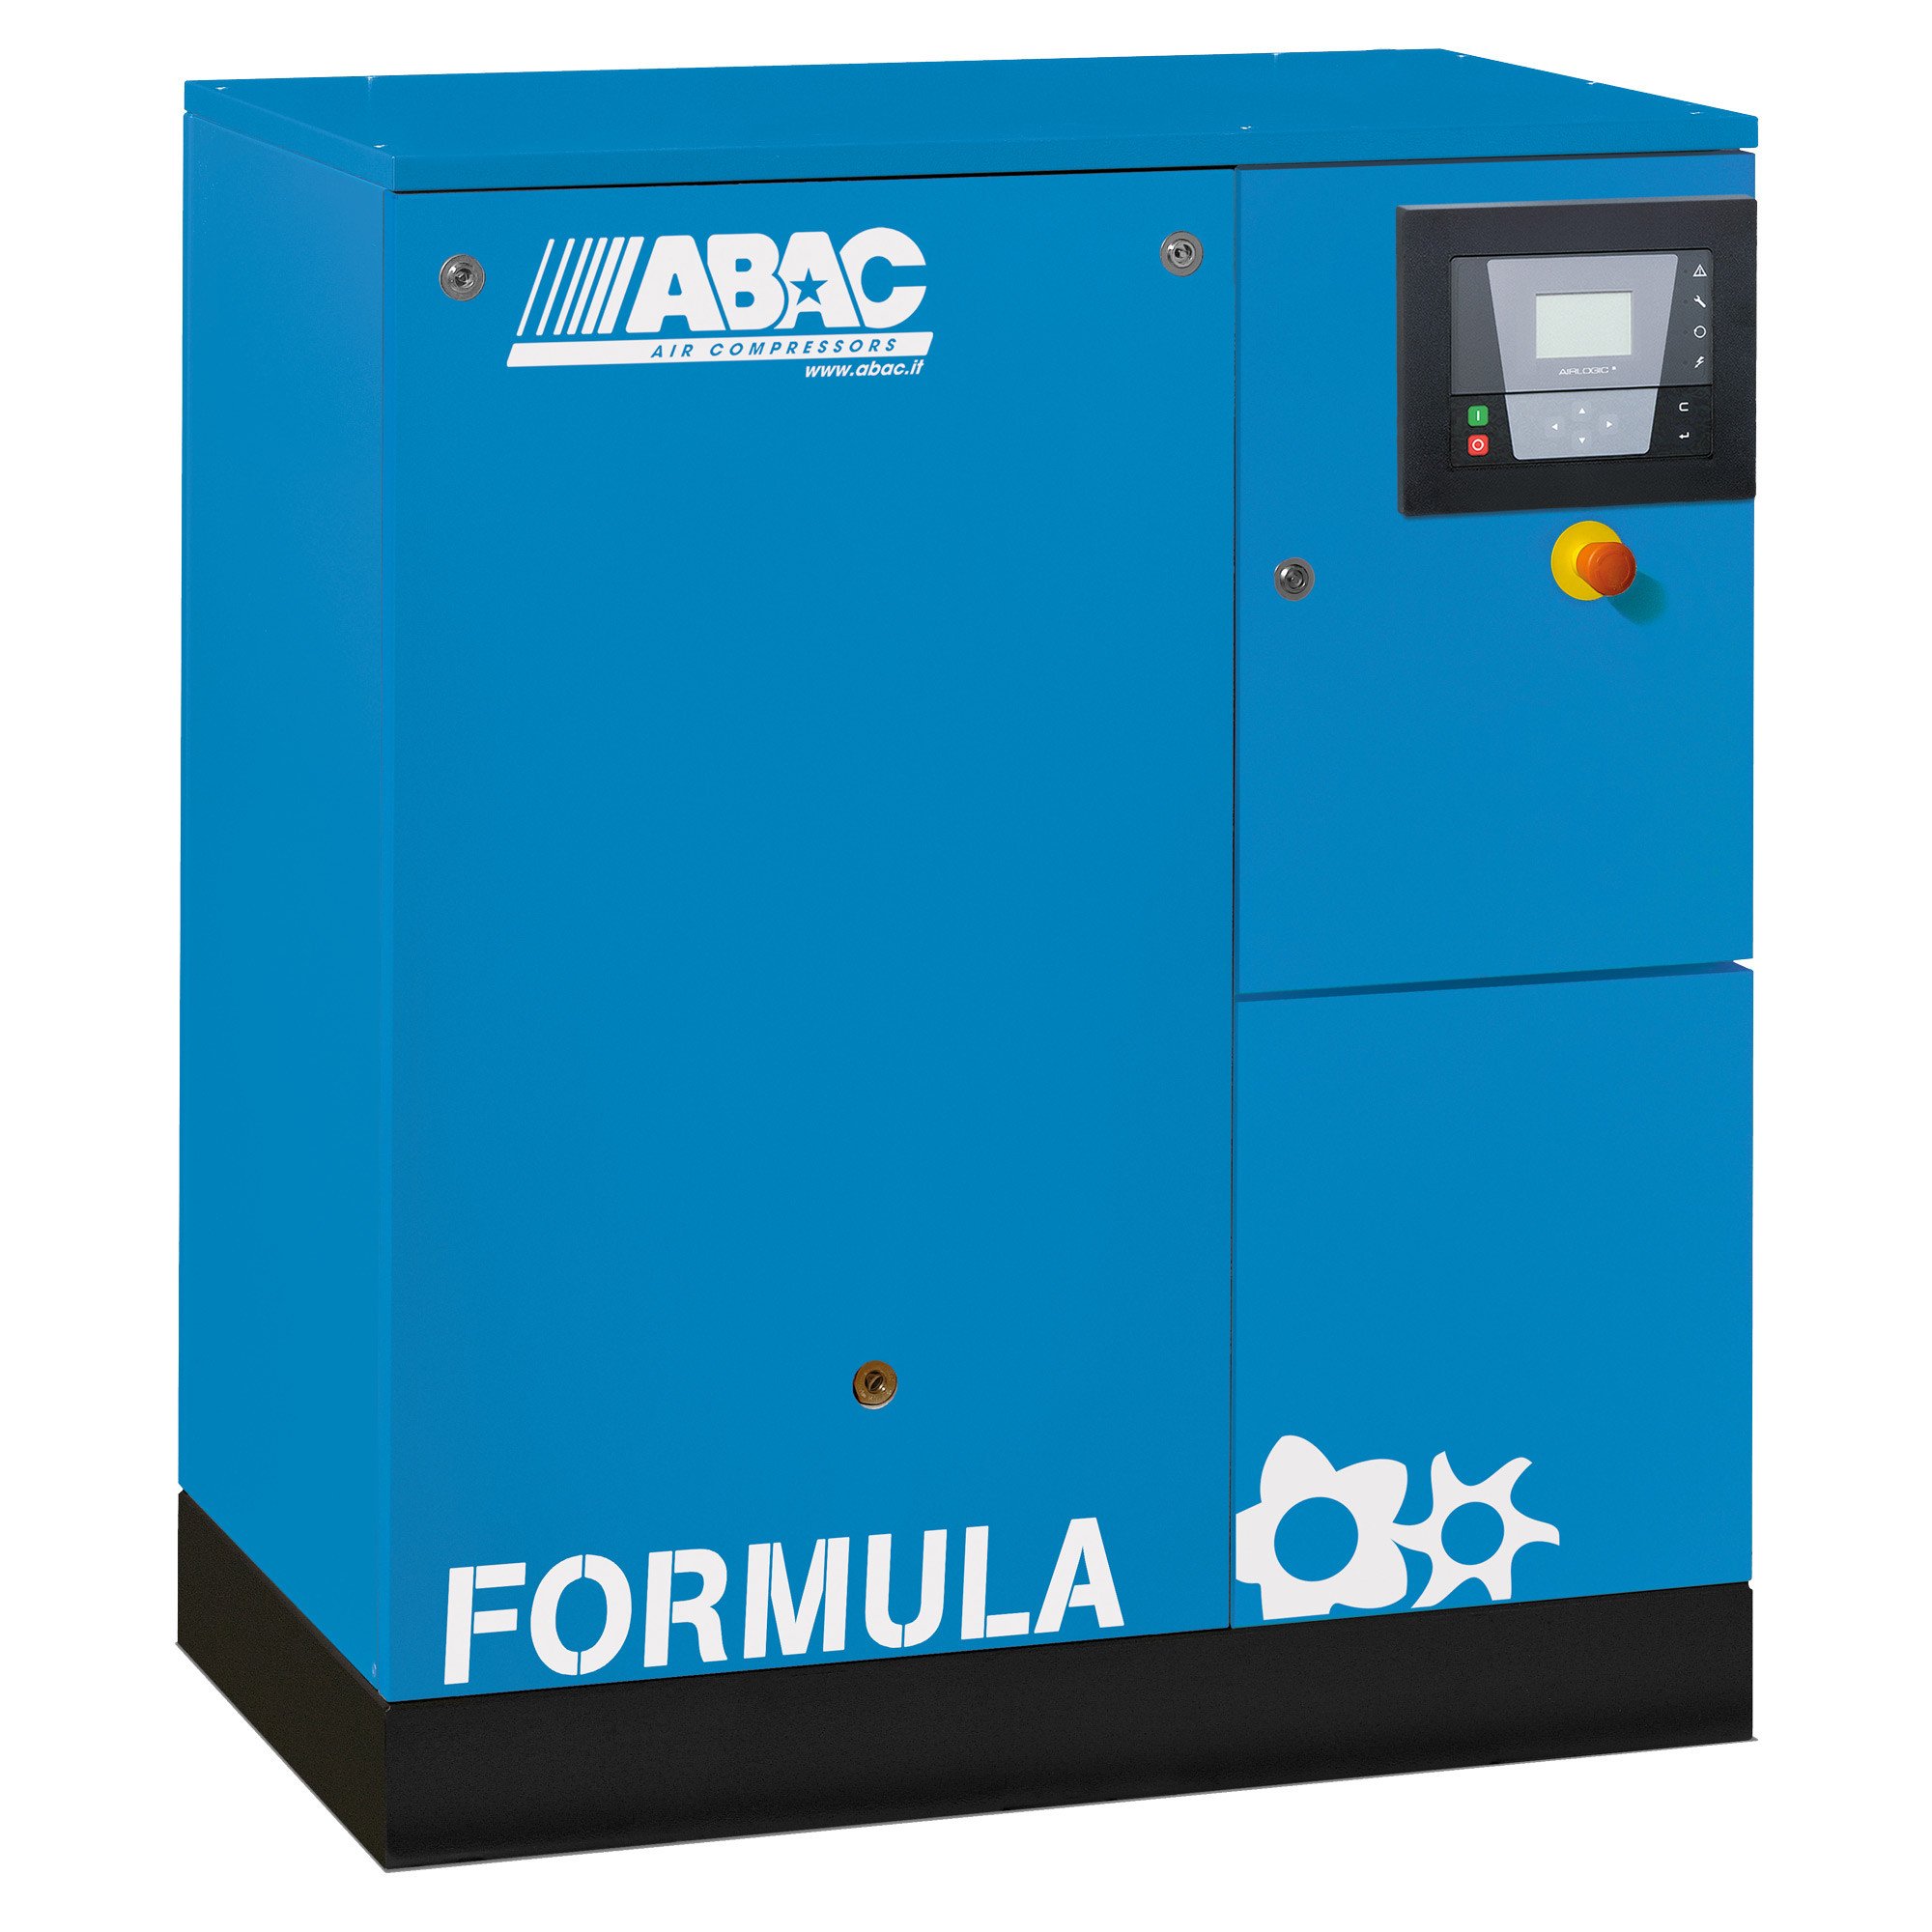 ABAC公式E 5.5千瓦固定速度旋转螺杆空气压缩机与干燥机基本单位